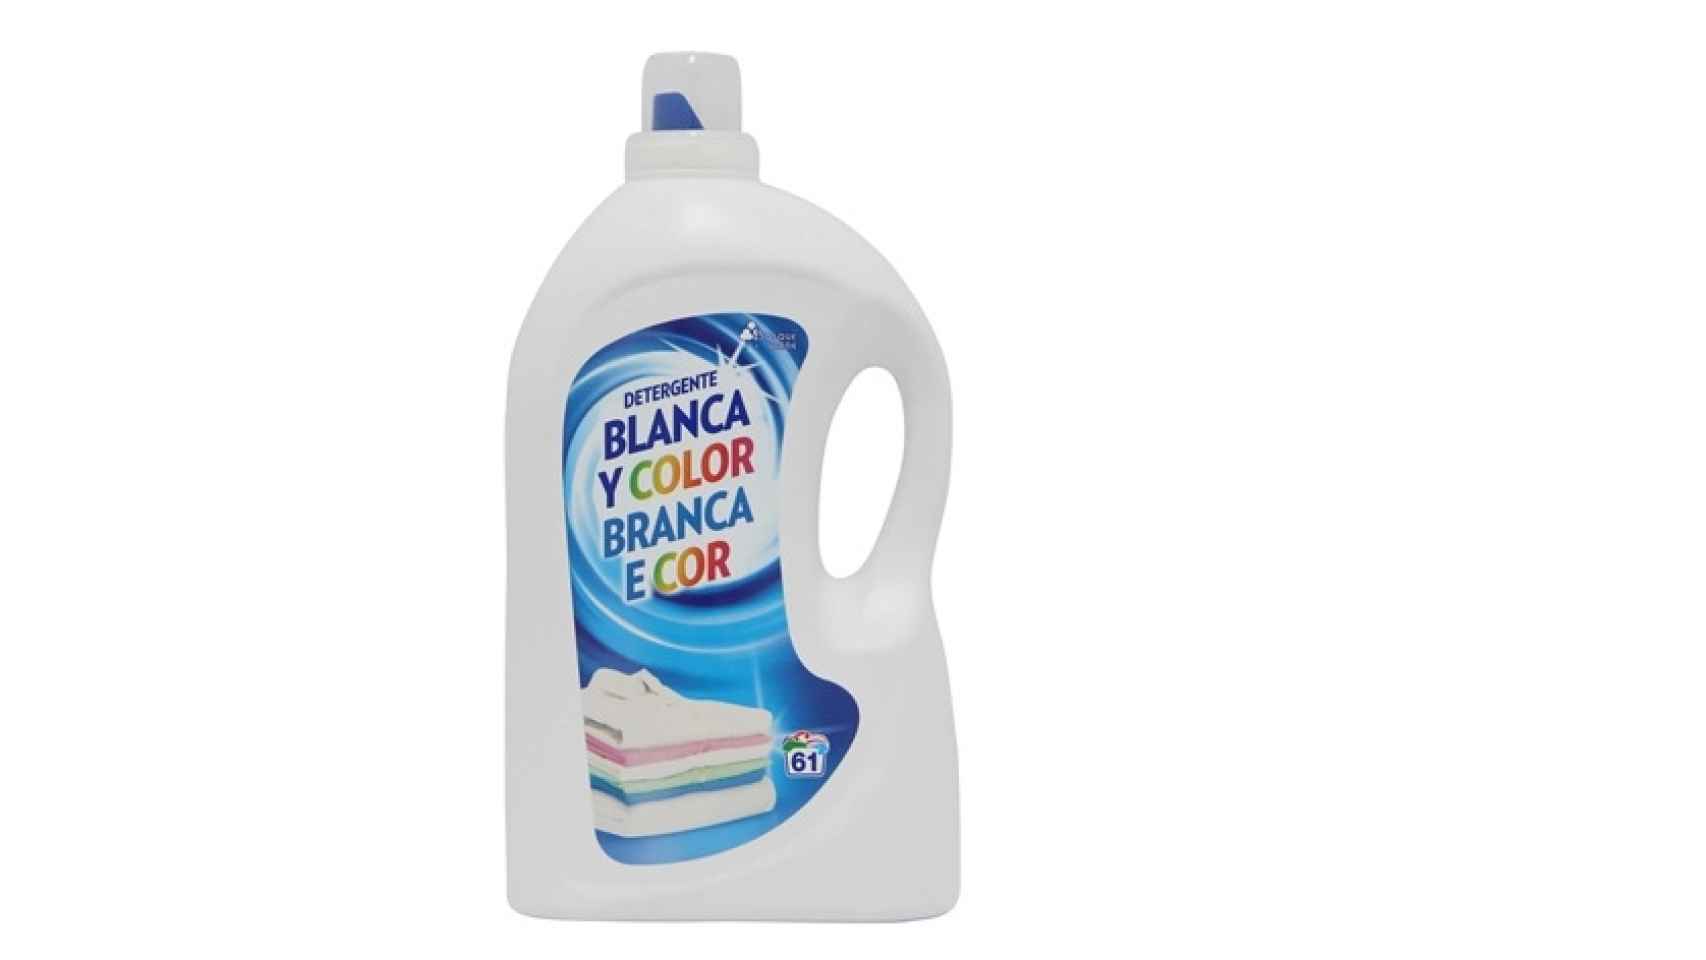 rosario Hacer las tareas domésticas Ewell Los 12 mejores y peores detergentes para lavadora de marca blanca según la  OCU: los hay hasta por 3 euros